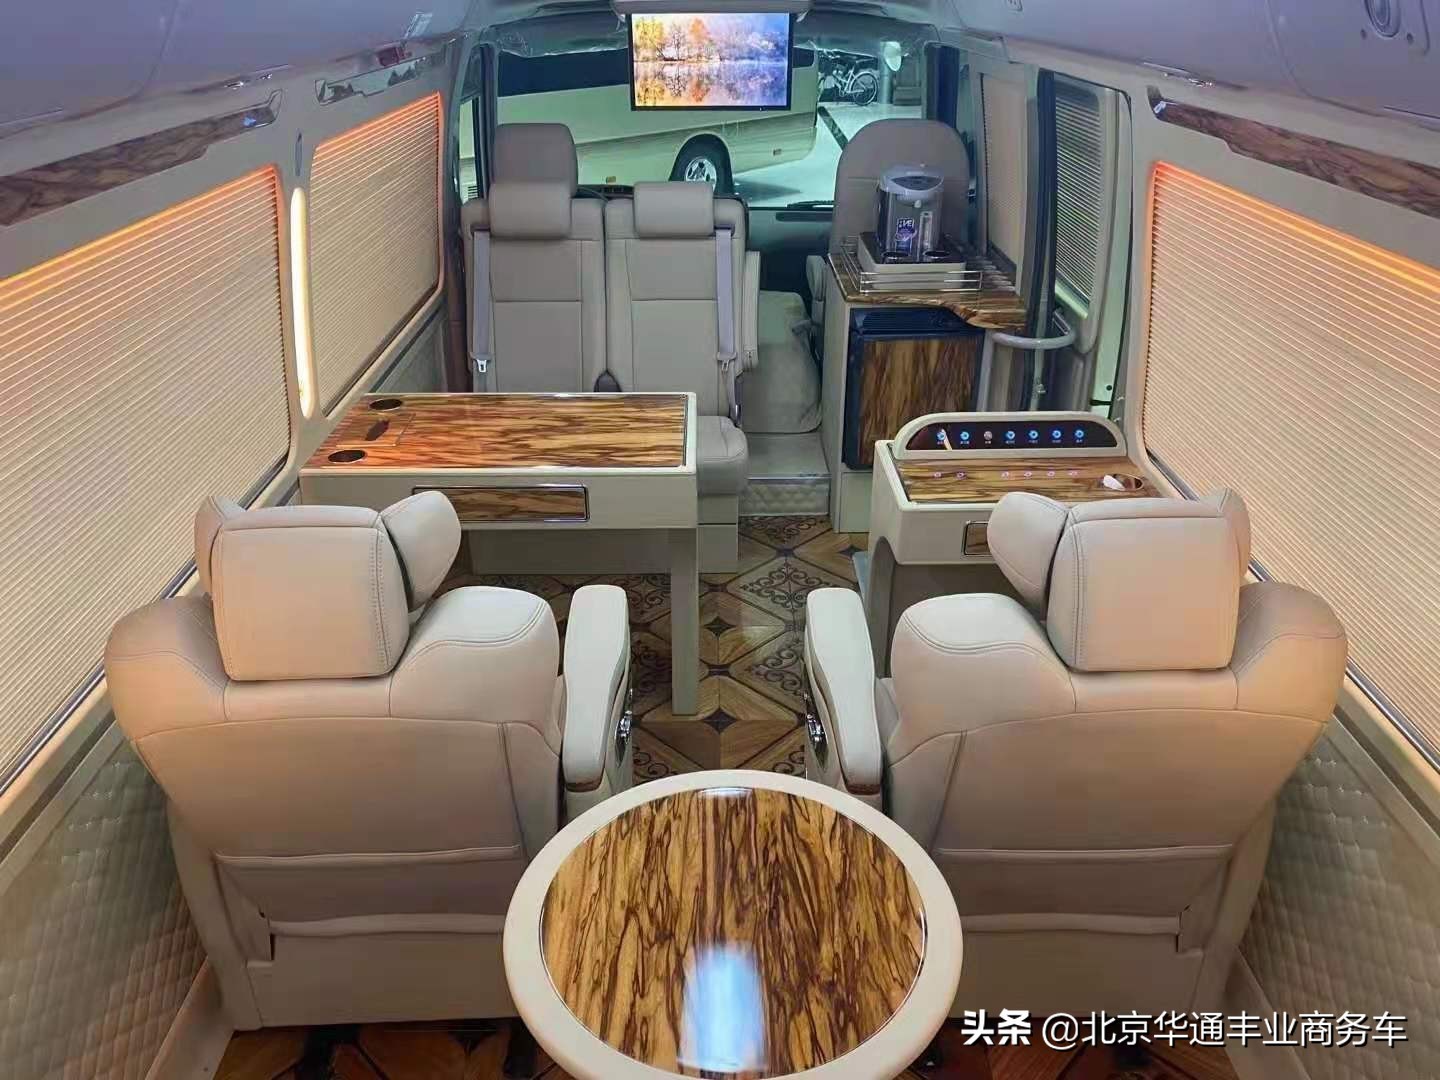 深圳丰田考斯特改装店 考斯特商务车12座